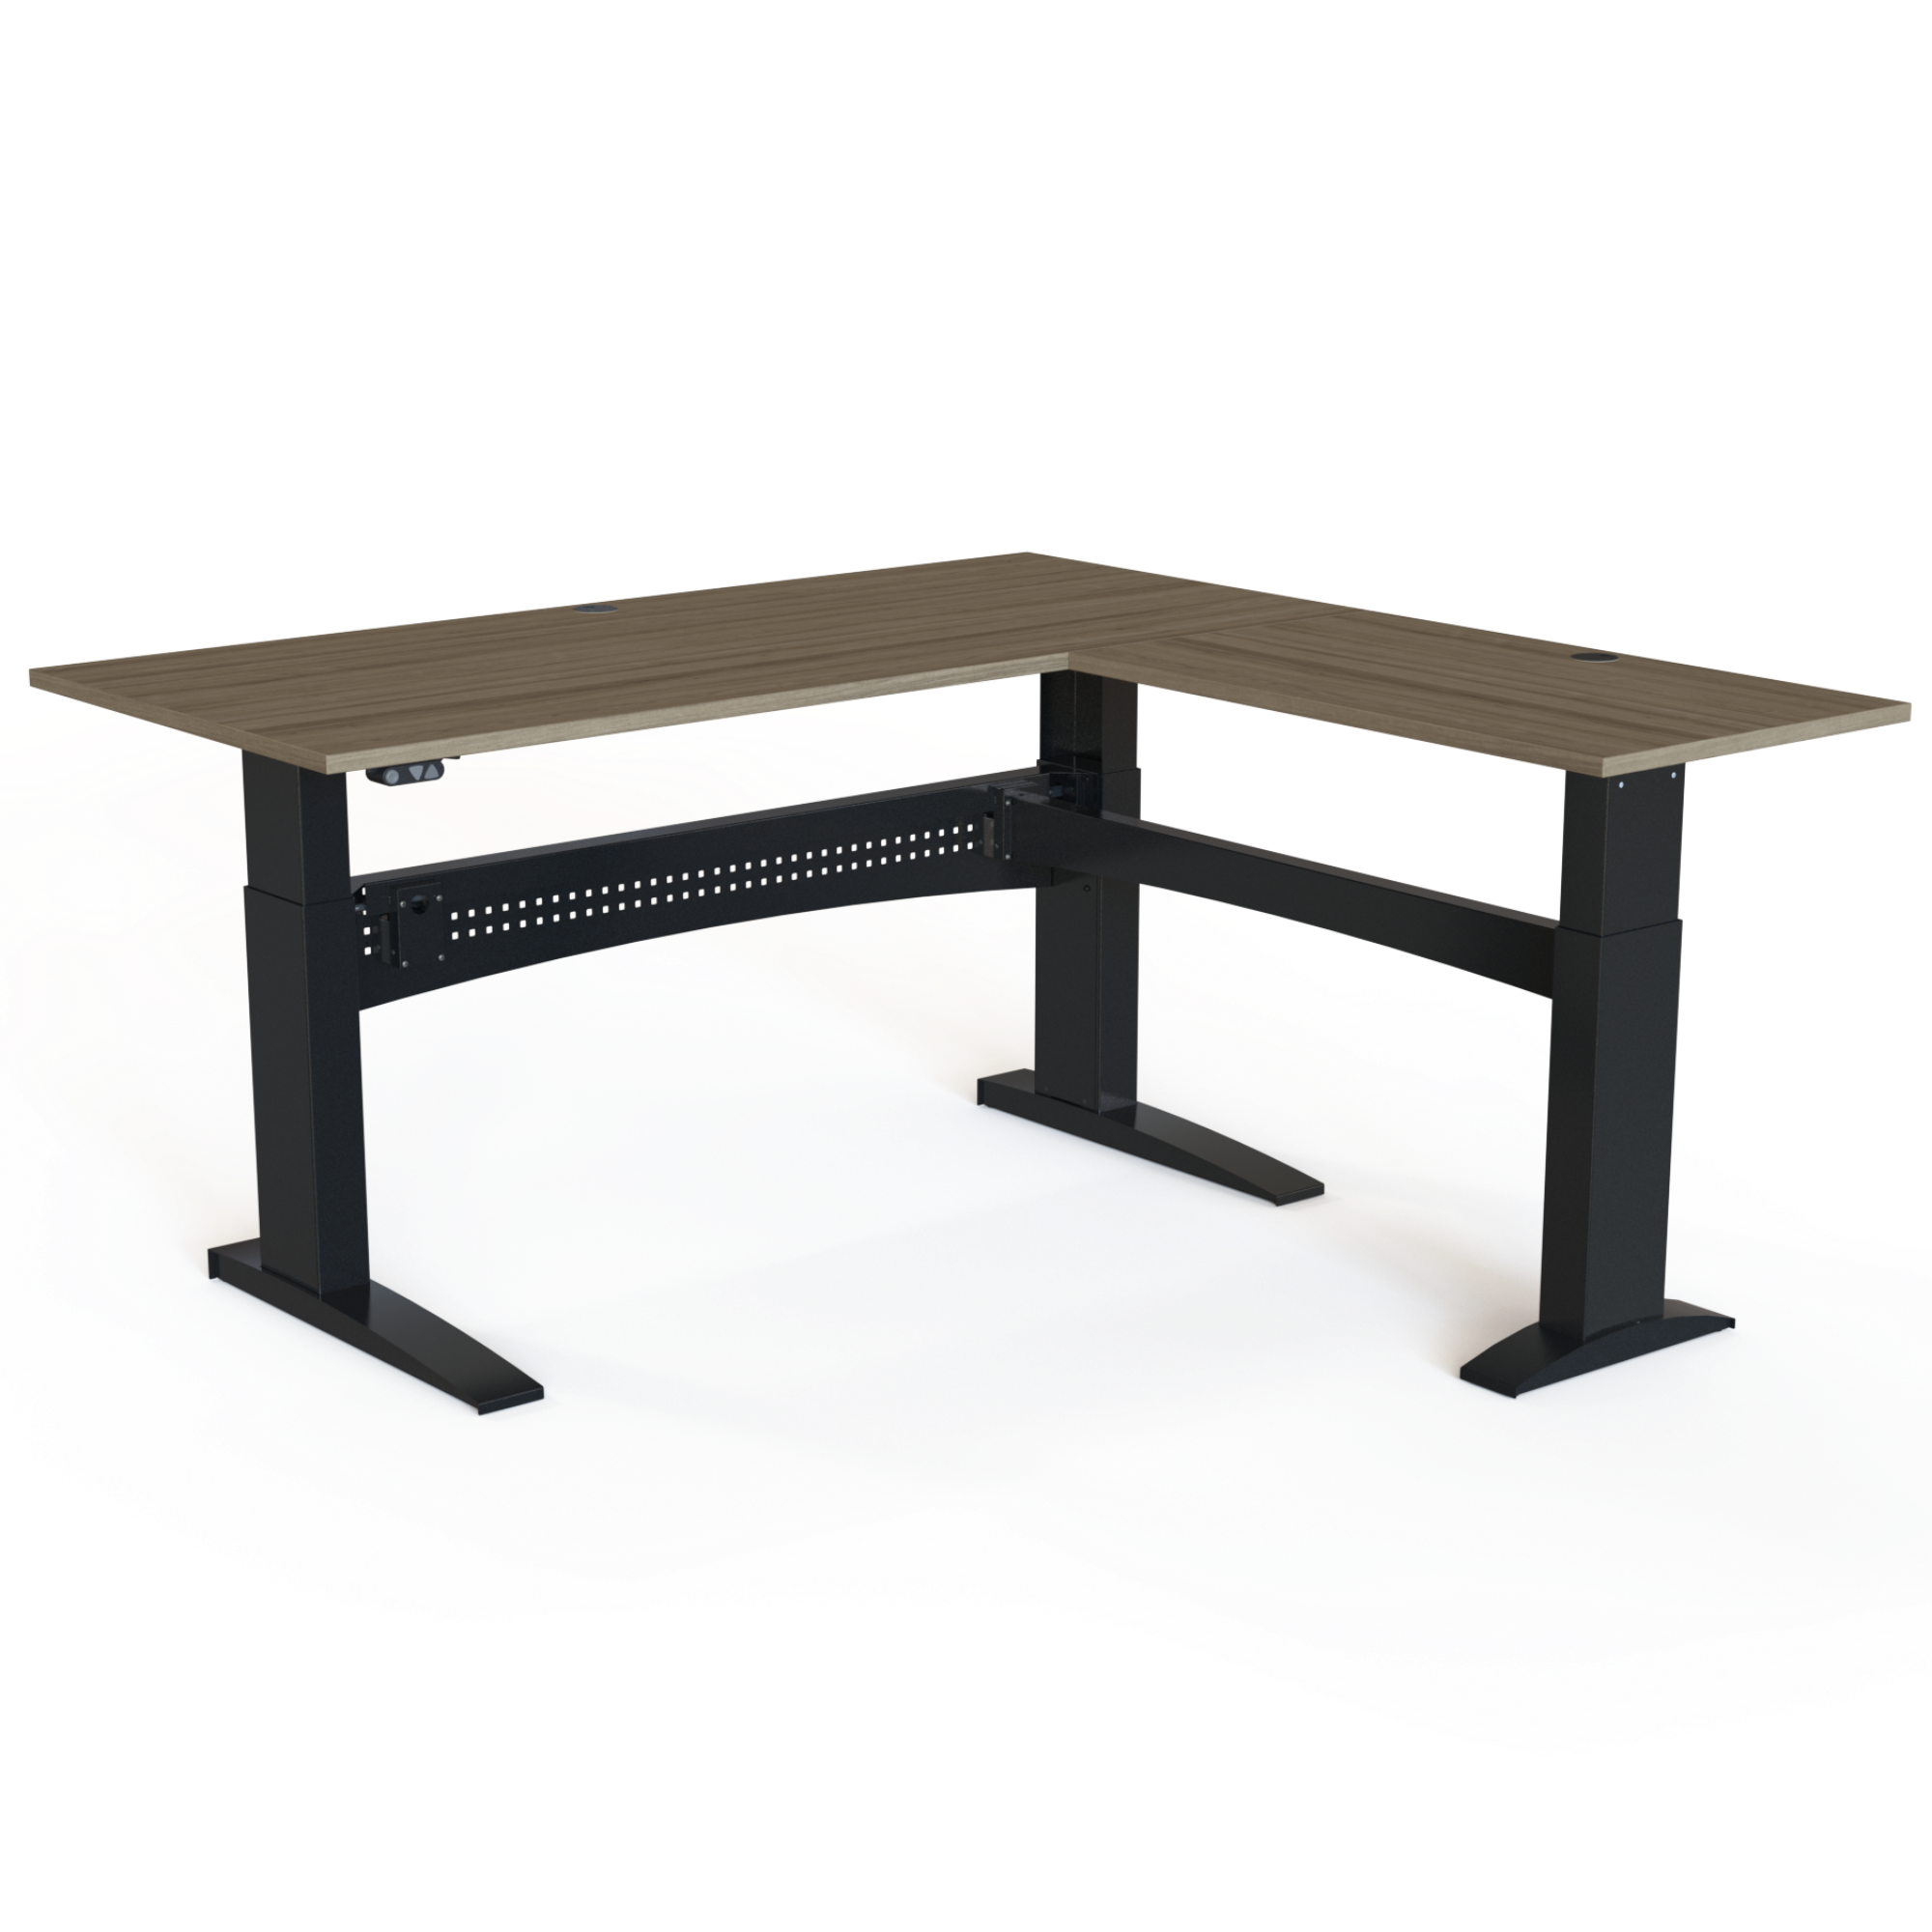 Electric Adjustable Desk | 180x180 cm | Walnut with black frame